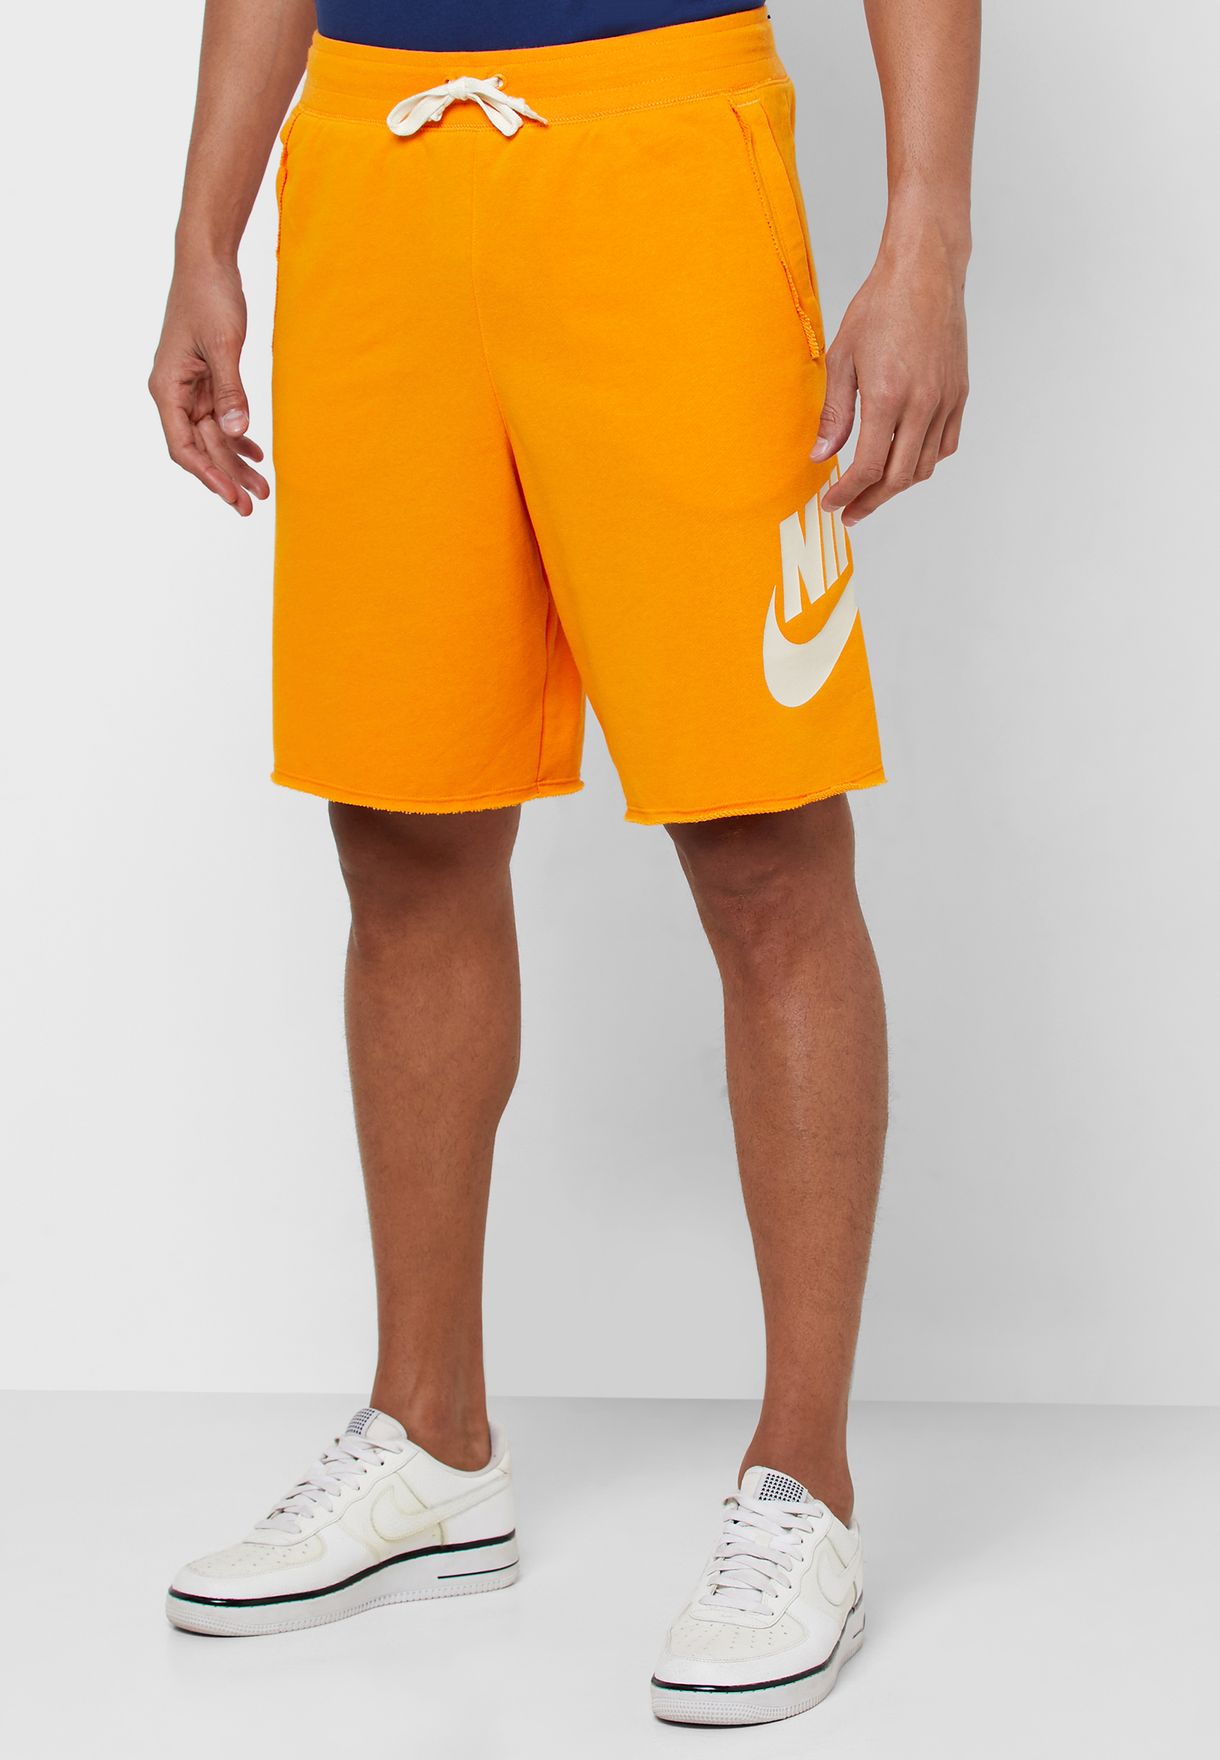 nike shorts men orange